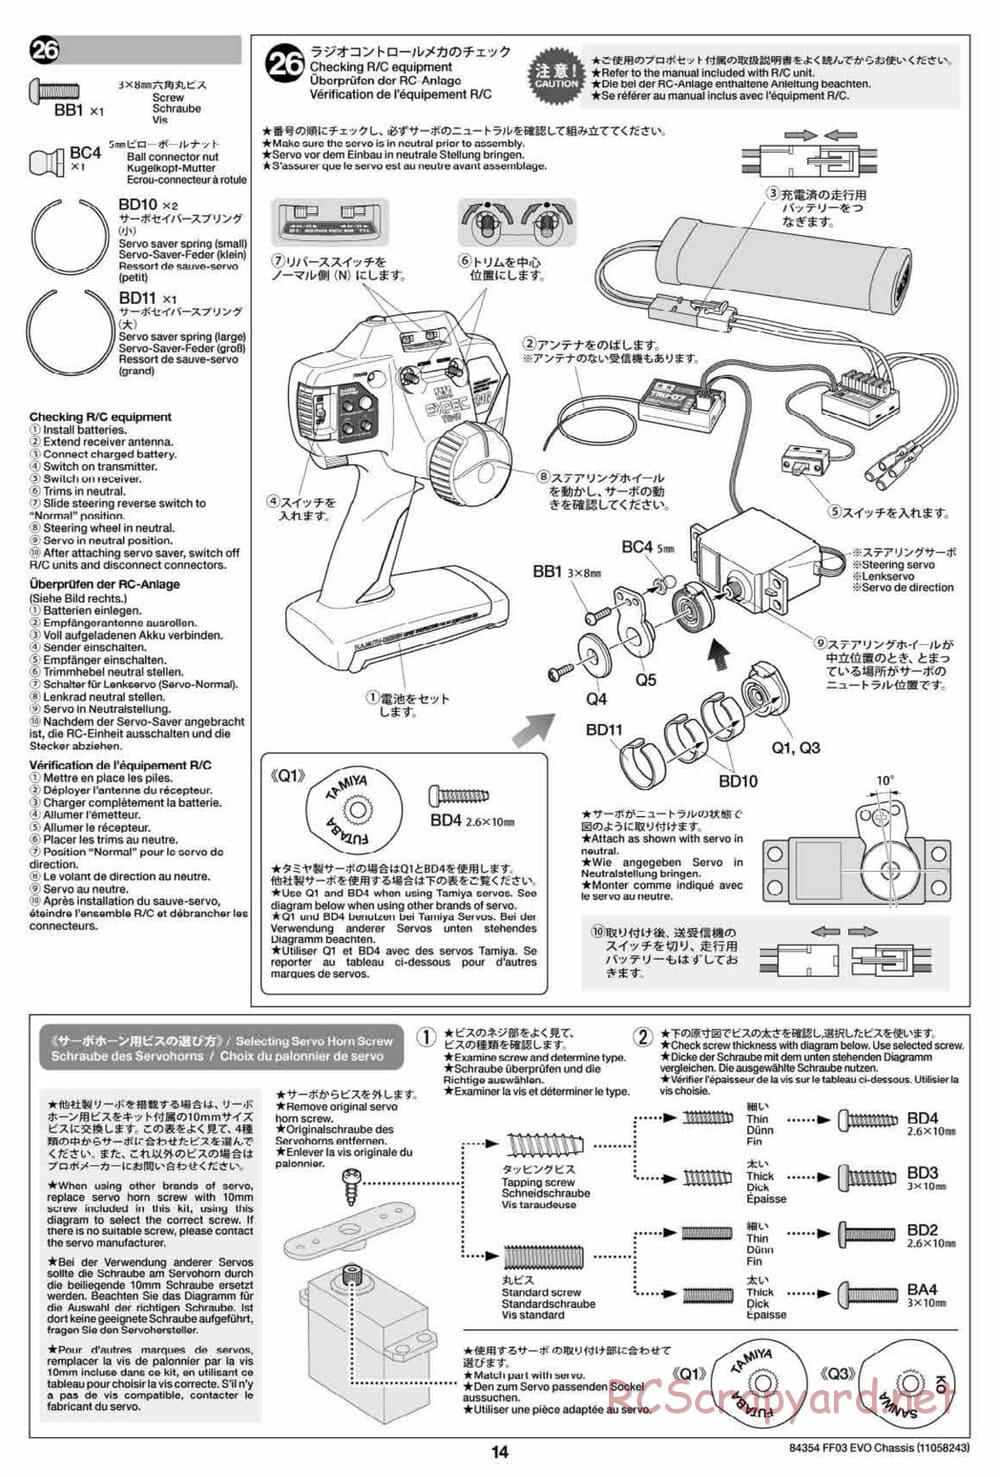 Tamiya - FF-03 Evo Chassis - Manual - Page 14